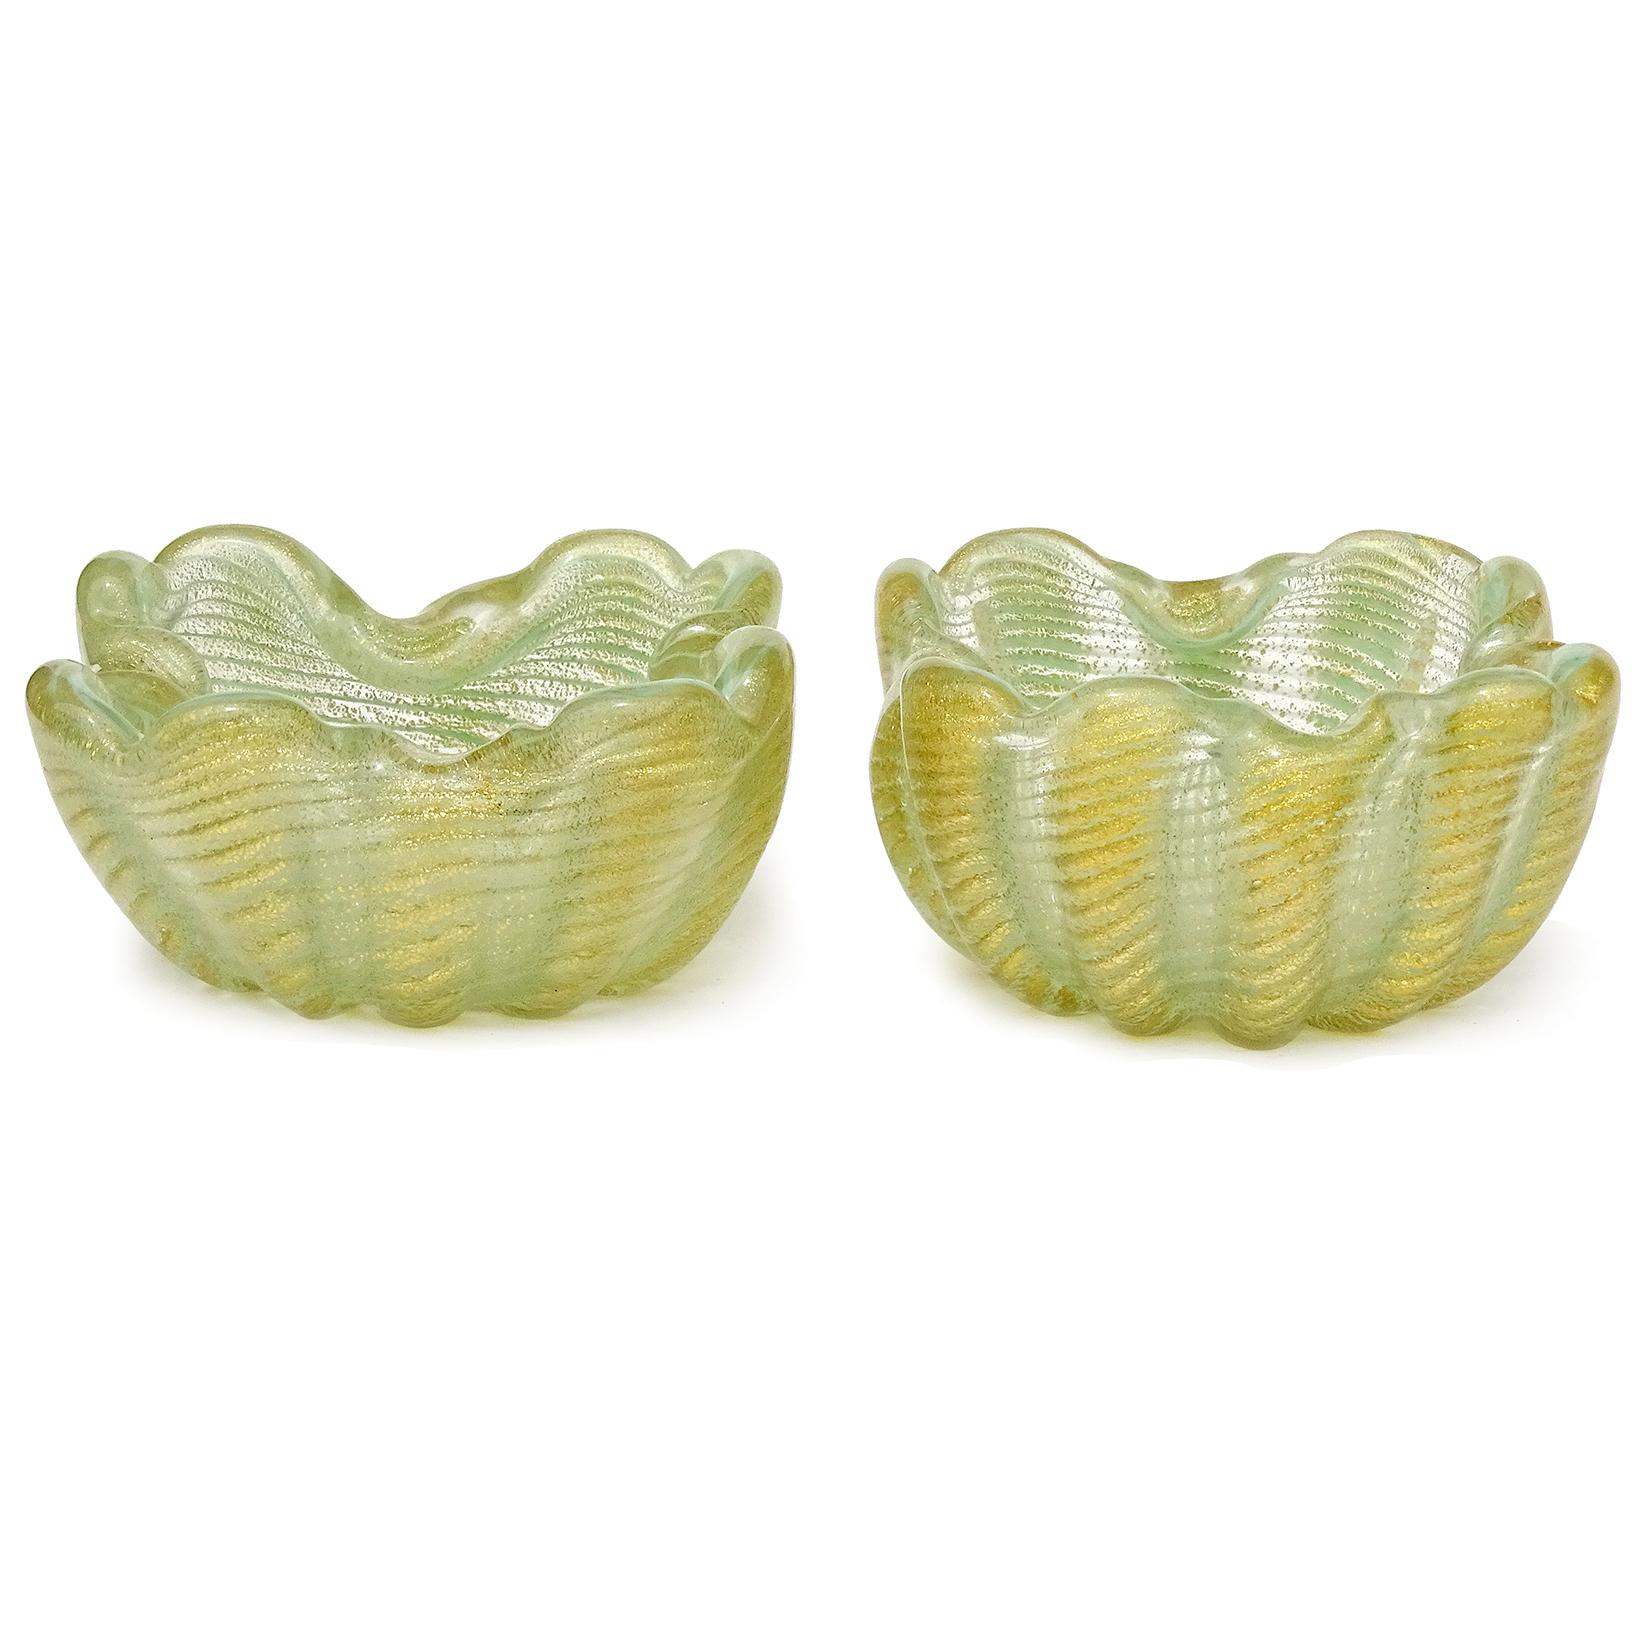 Schöne Vintage Murano mundgeblasen hellgrün und Goldflecken italienische Kunstglas persönlichen Aschenbecher oder Ring Gerichte. Dokumentiert für den Designer Ercole Barovier, für Barovier e Toso. Sie sind in den Designs Cordonato D' Oro und Zebrati